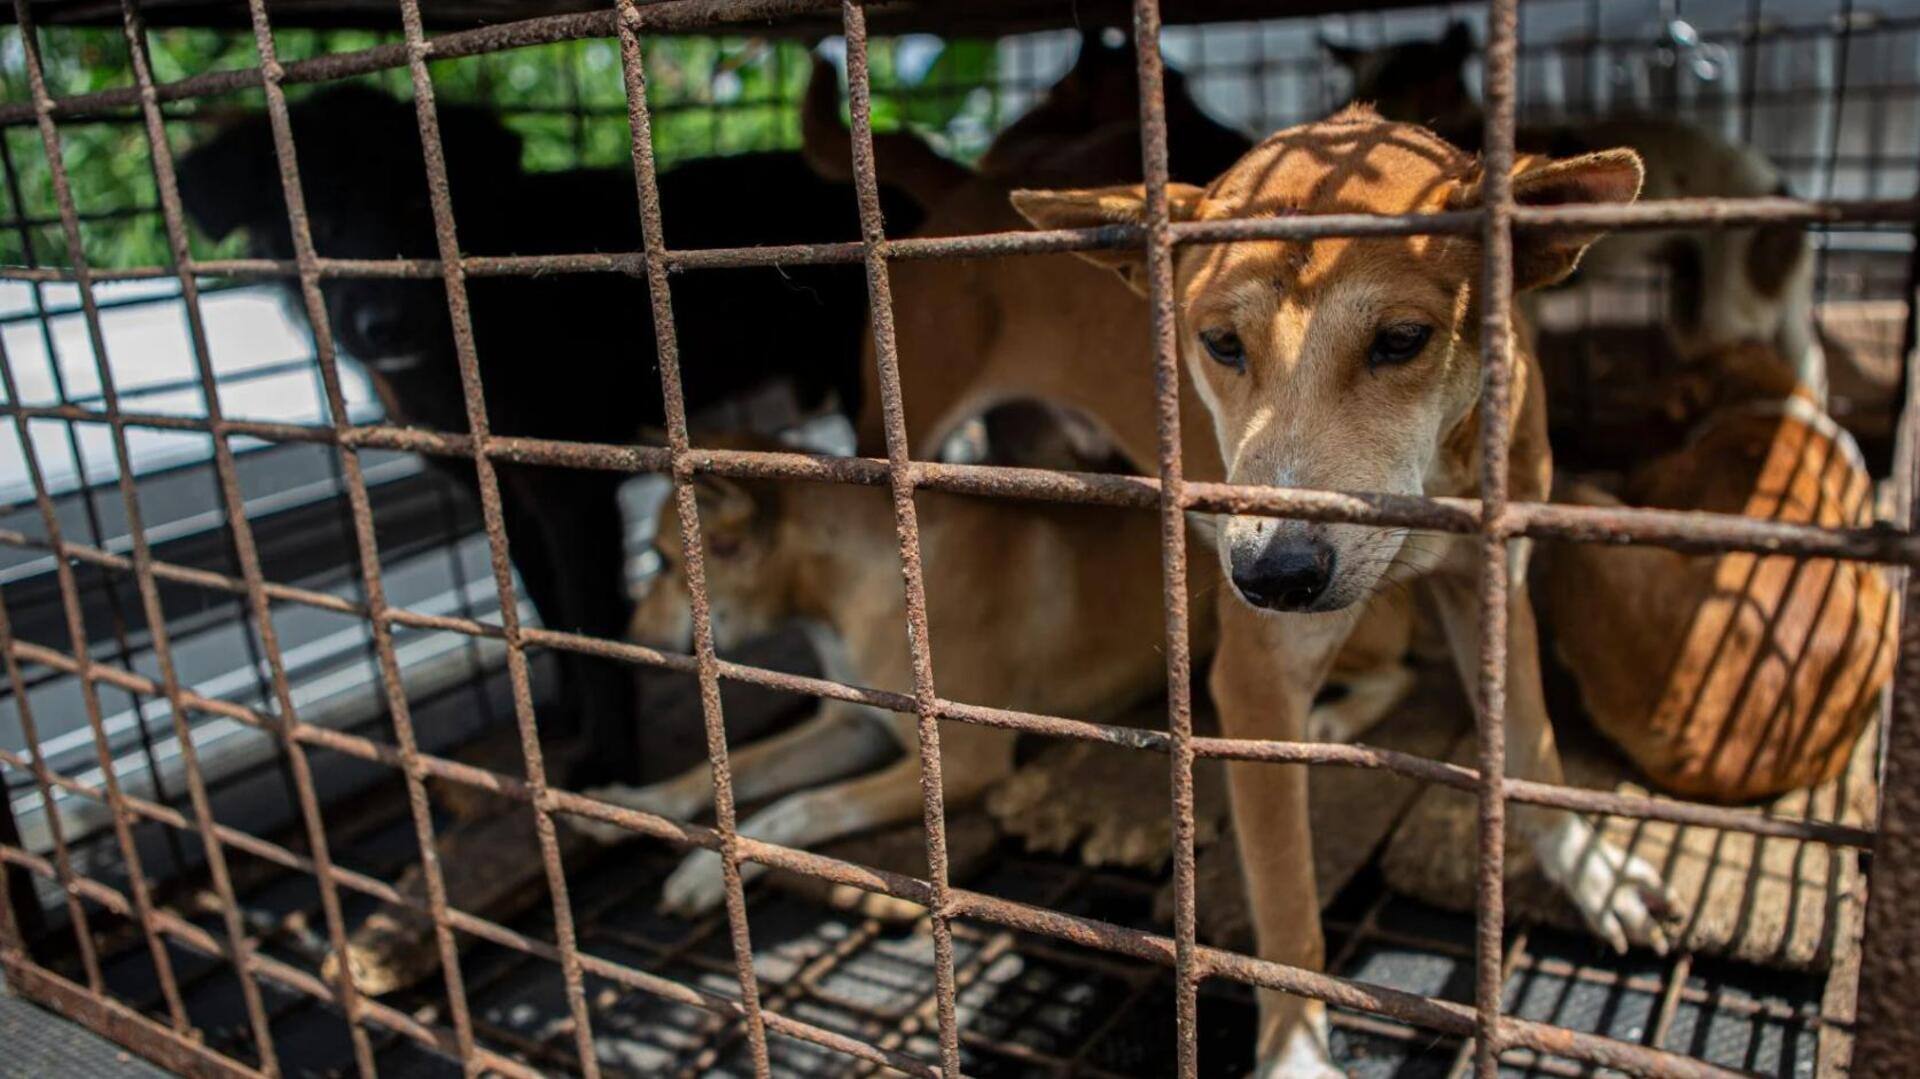 दिल्ली: G-20 के मद्देनजर एयरपोर्ट पर कुत्तों को पकड़ने का अभियान, रस्सी से बांधकर घसीटा गया